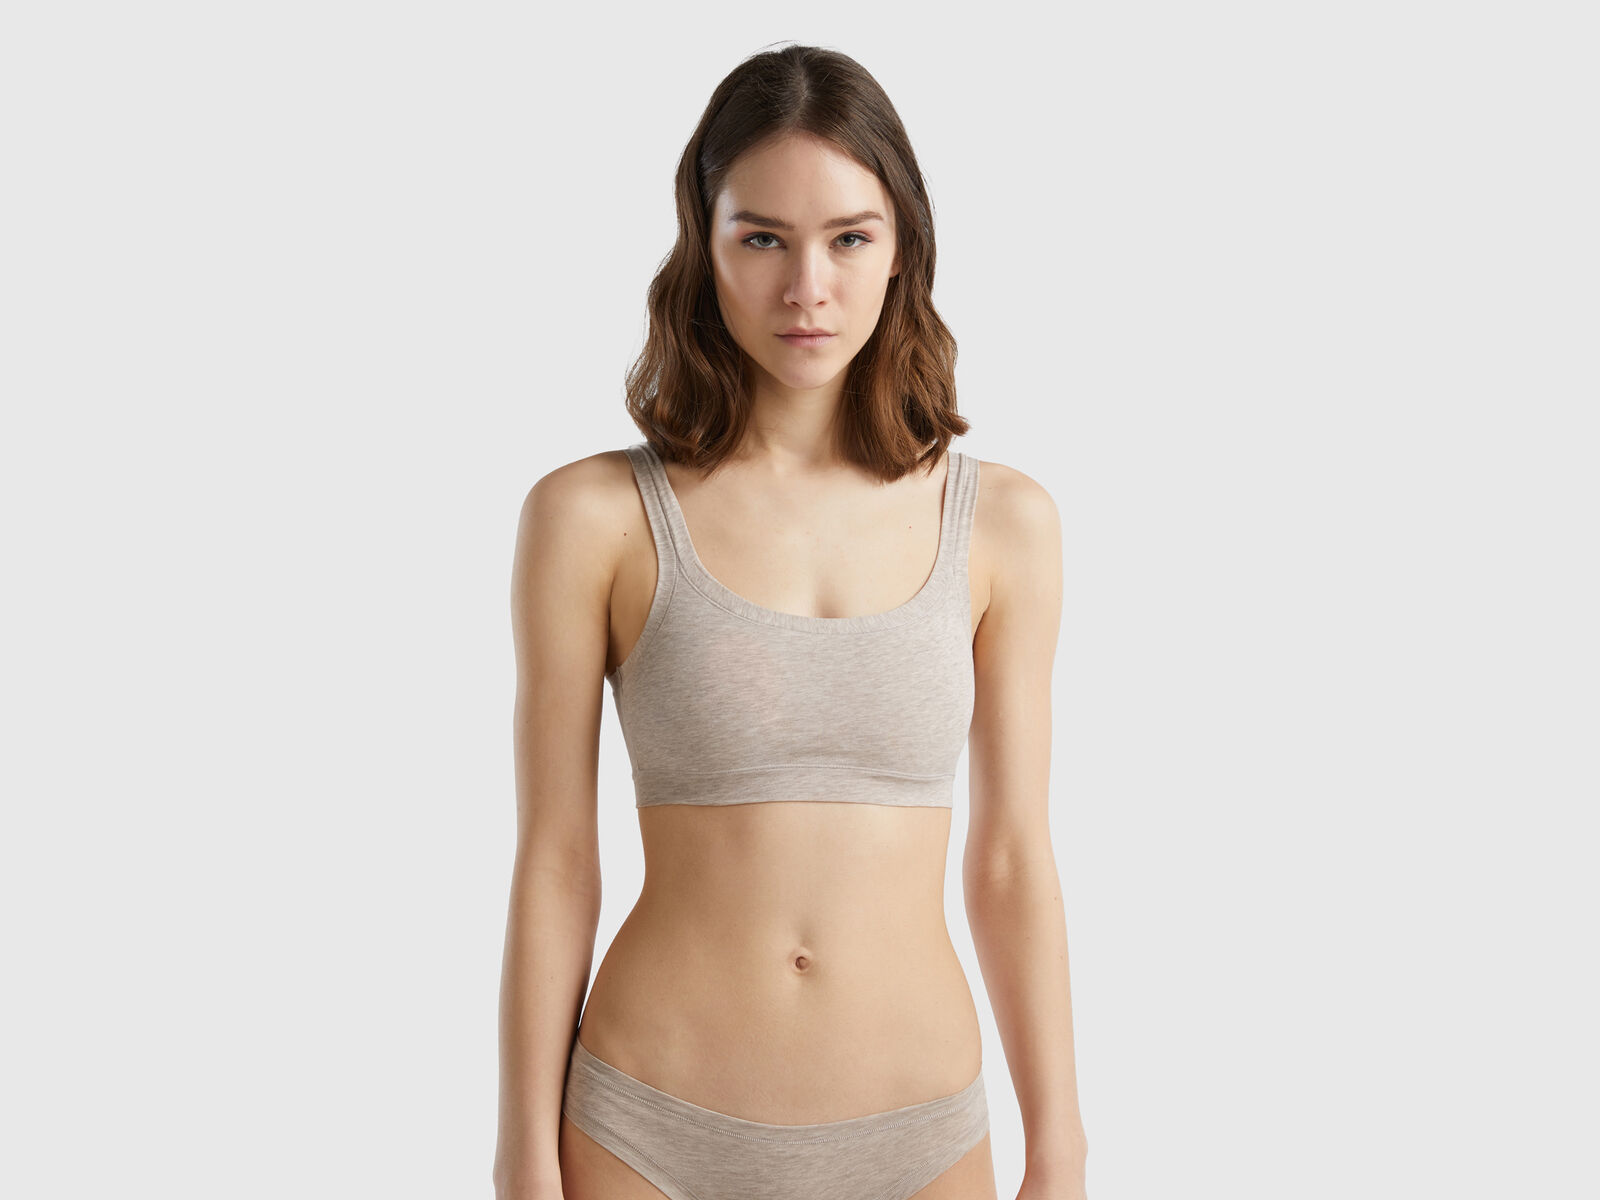 Buy online Beige Nylon Regular Bra from lingerie for Women by Body Lable  for ₹249 at 38% off